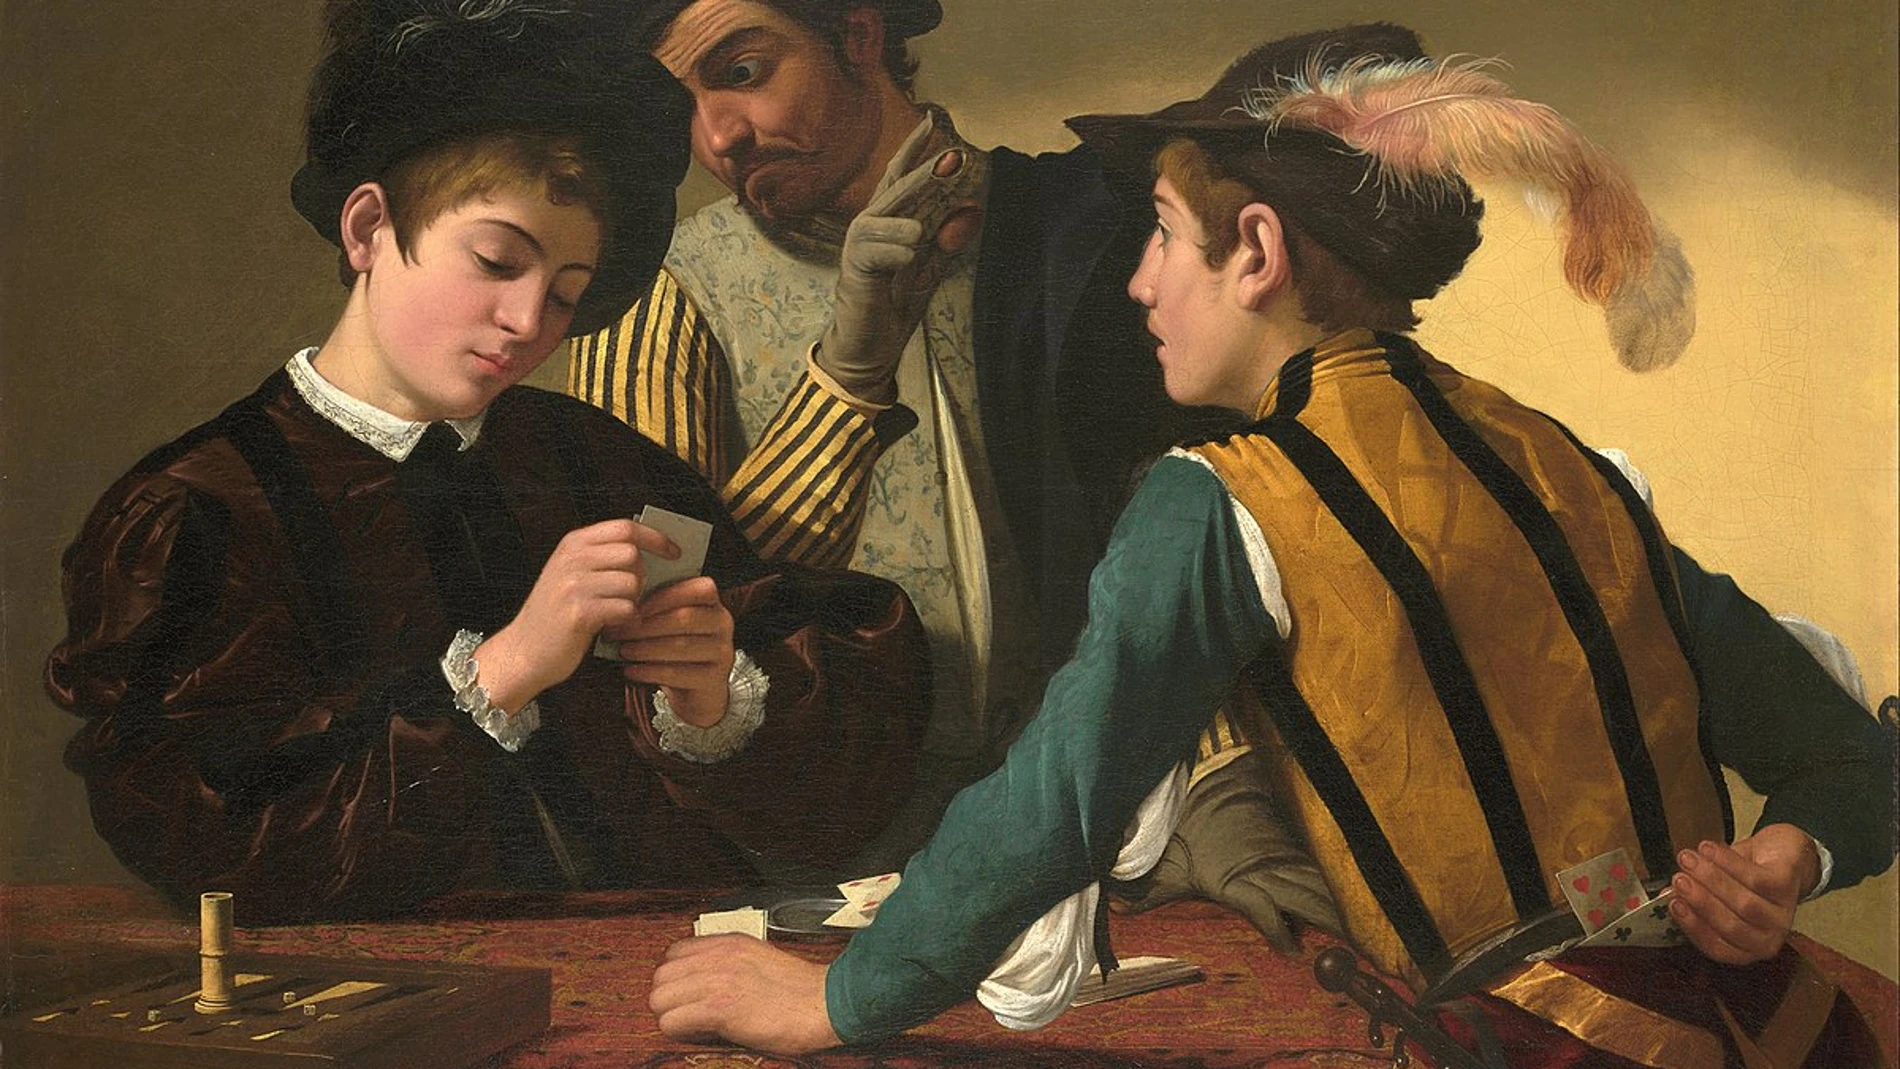 Caravaggio basó este cuadro de 1595, "Jugadores de cartas", en sus experiencias dentro de ambientes delictivos